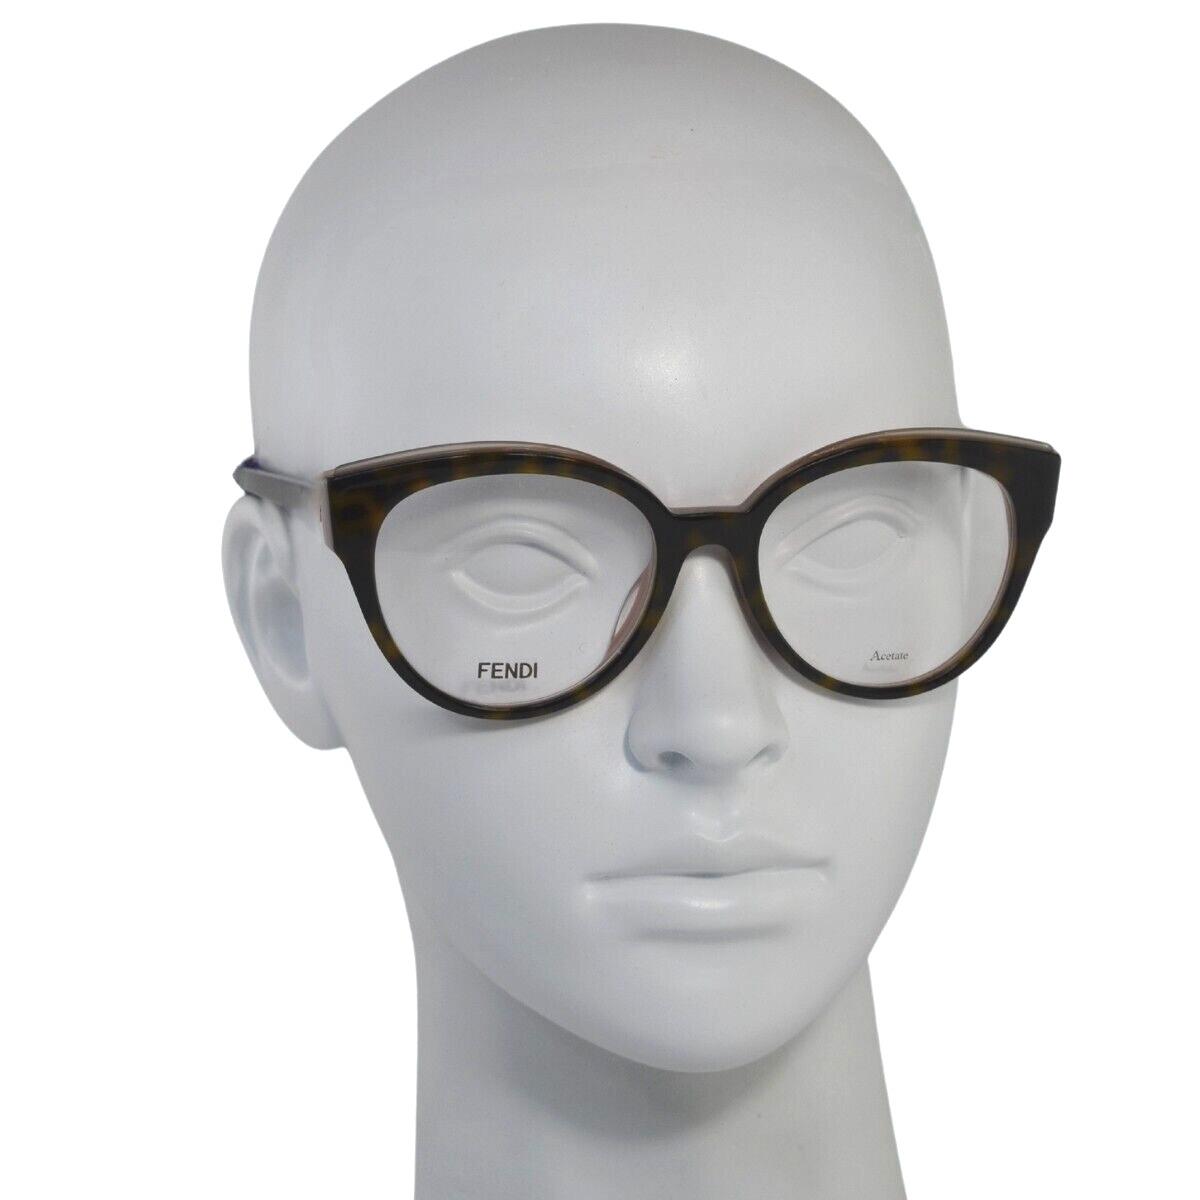 Fendi Eyeglasses - FF 280 0086 - Dark Havana Brown with Pink 51-18-140